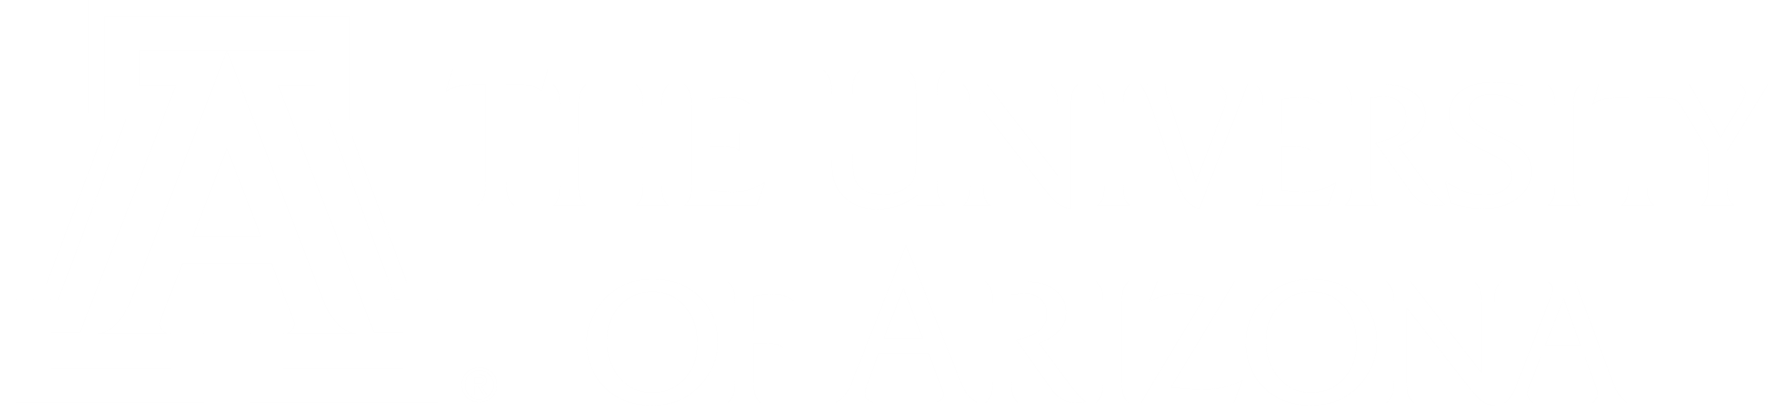 University of Arizona Logo Image.